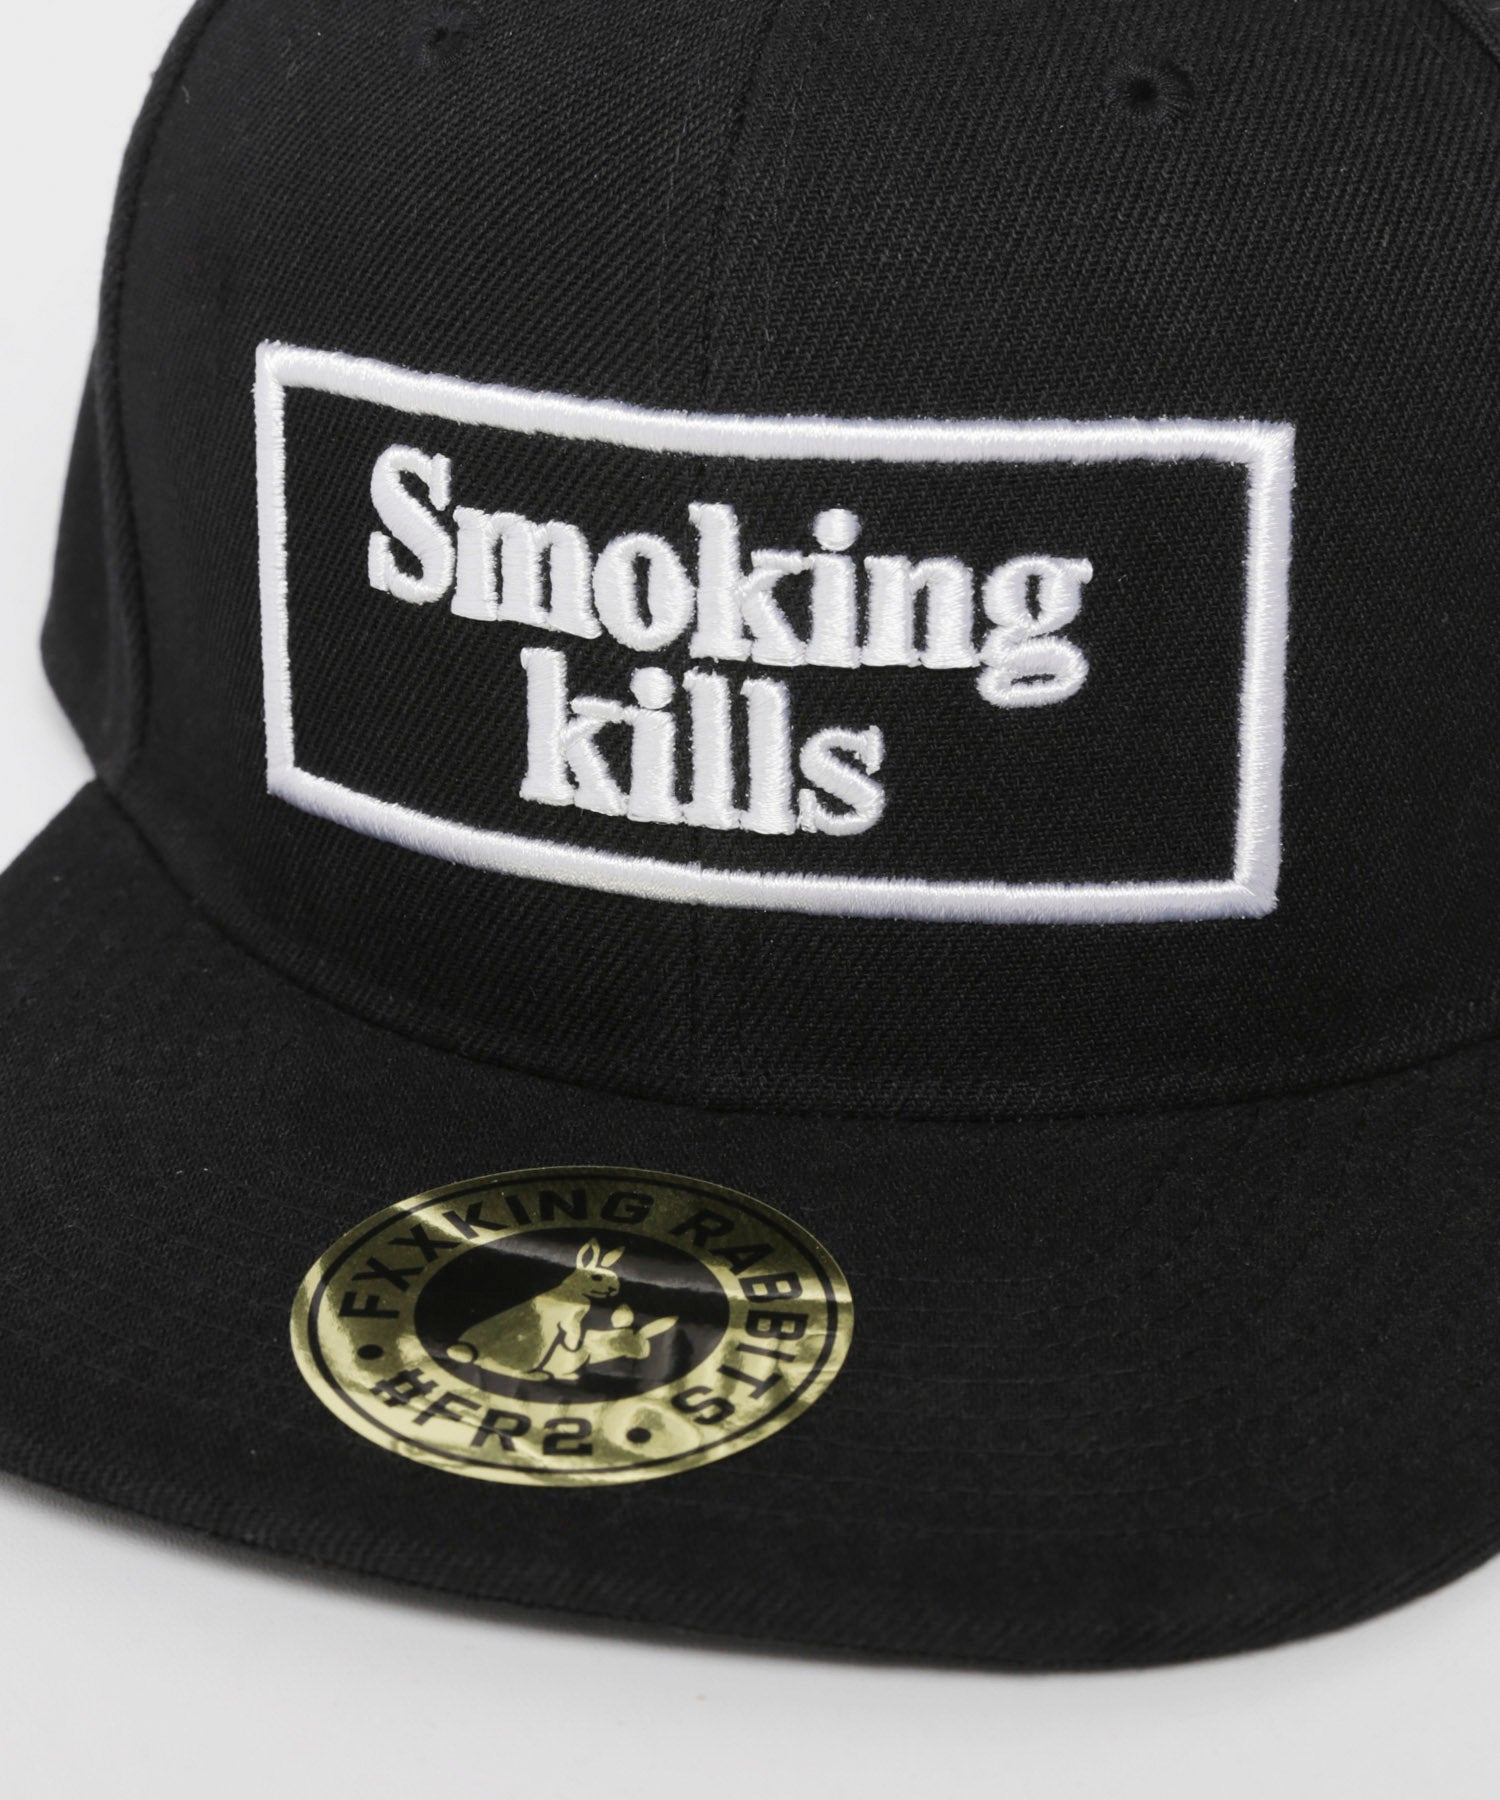 FR2の#FR2 月桃 沖縄 Smoking kills Embroidery Cap - キャップ